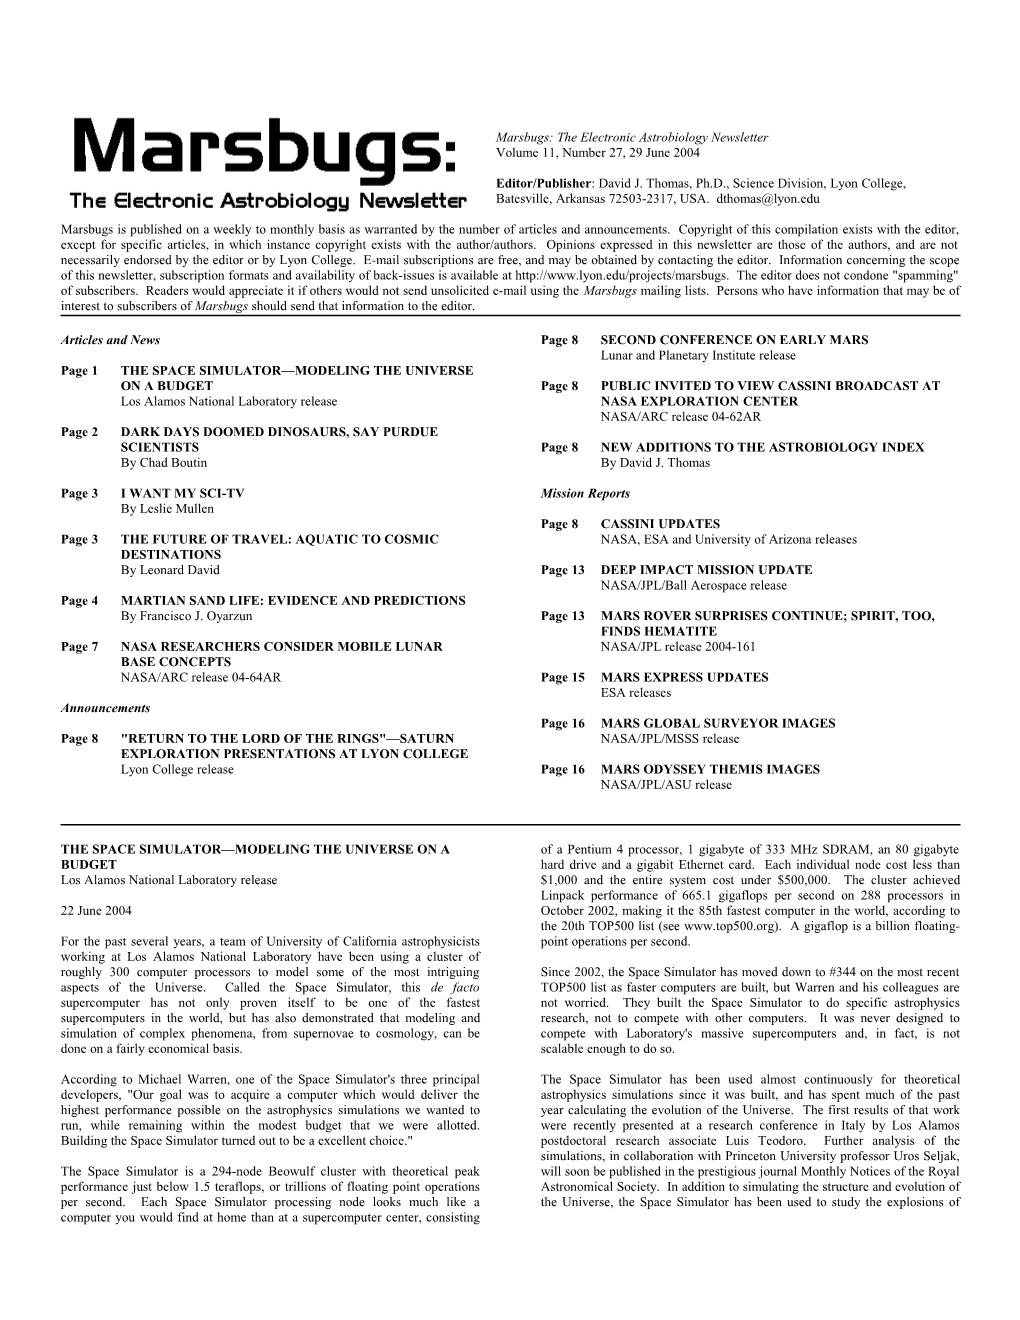 Marsbugs Vol. 11, No. 27